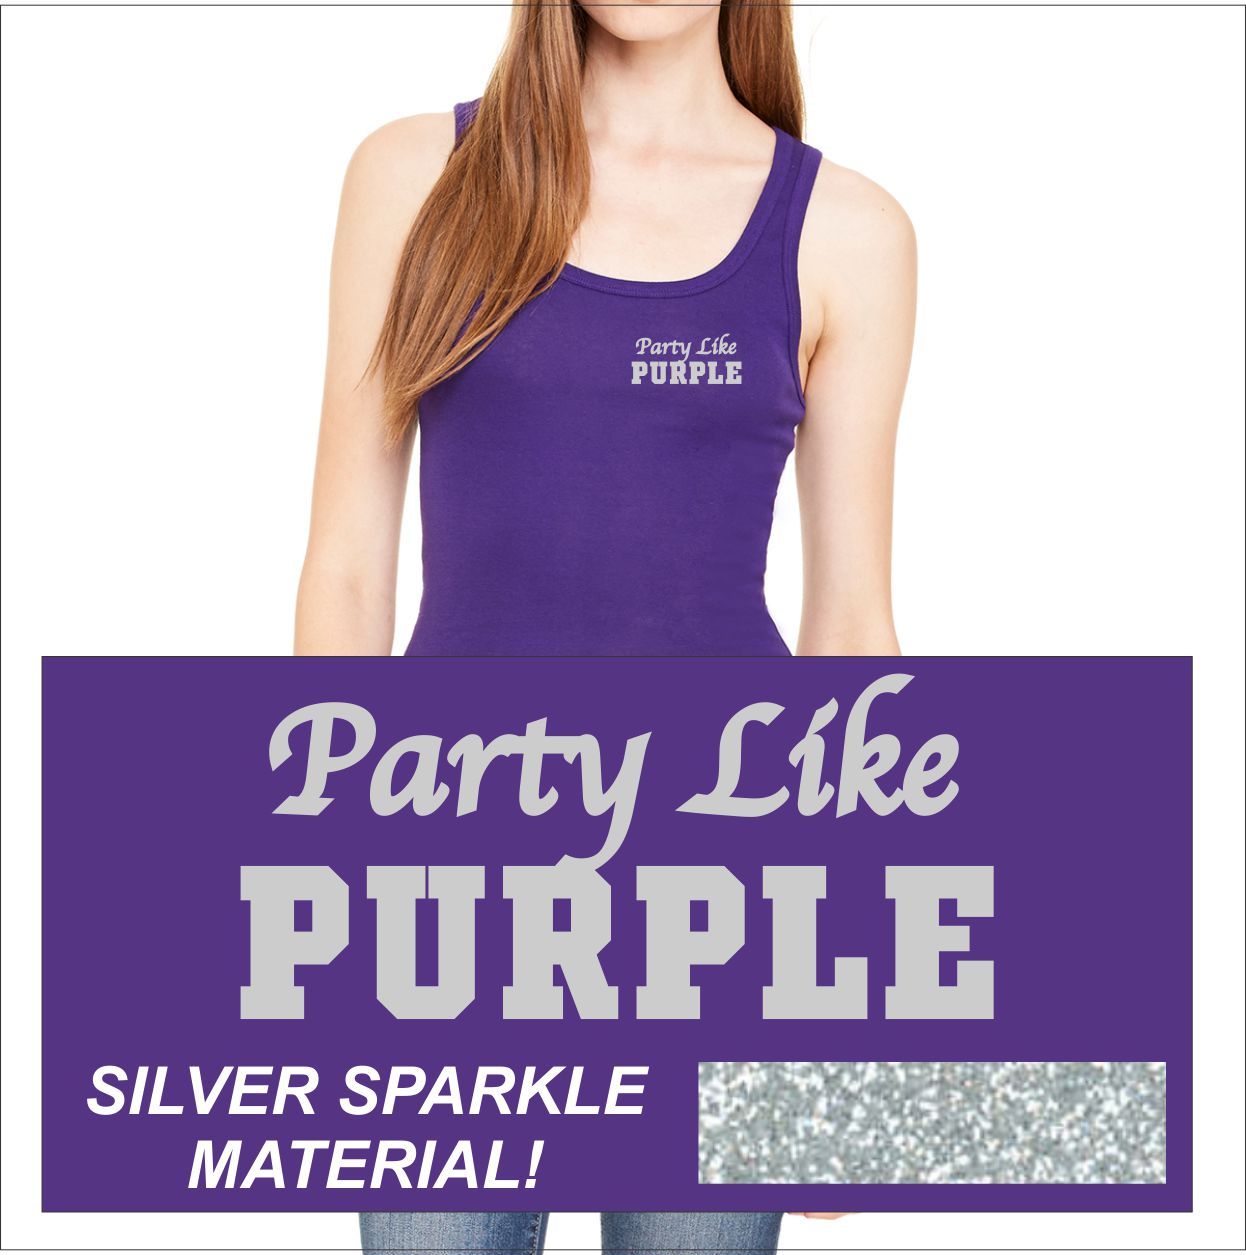 Party like PURPLE-Purple